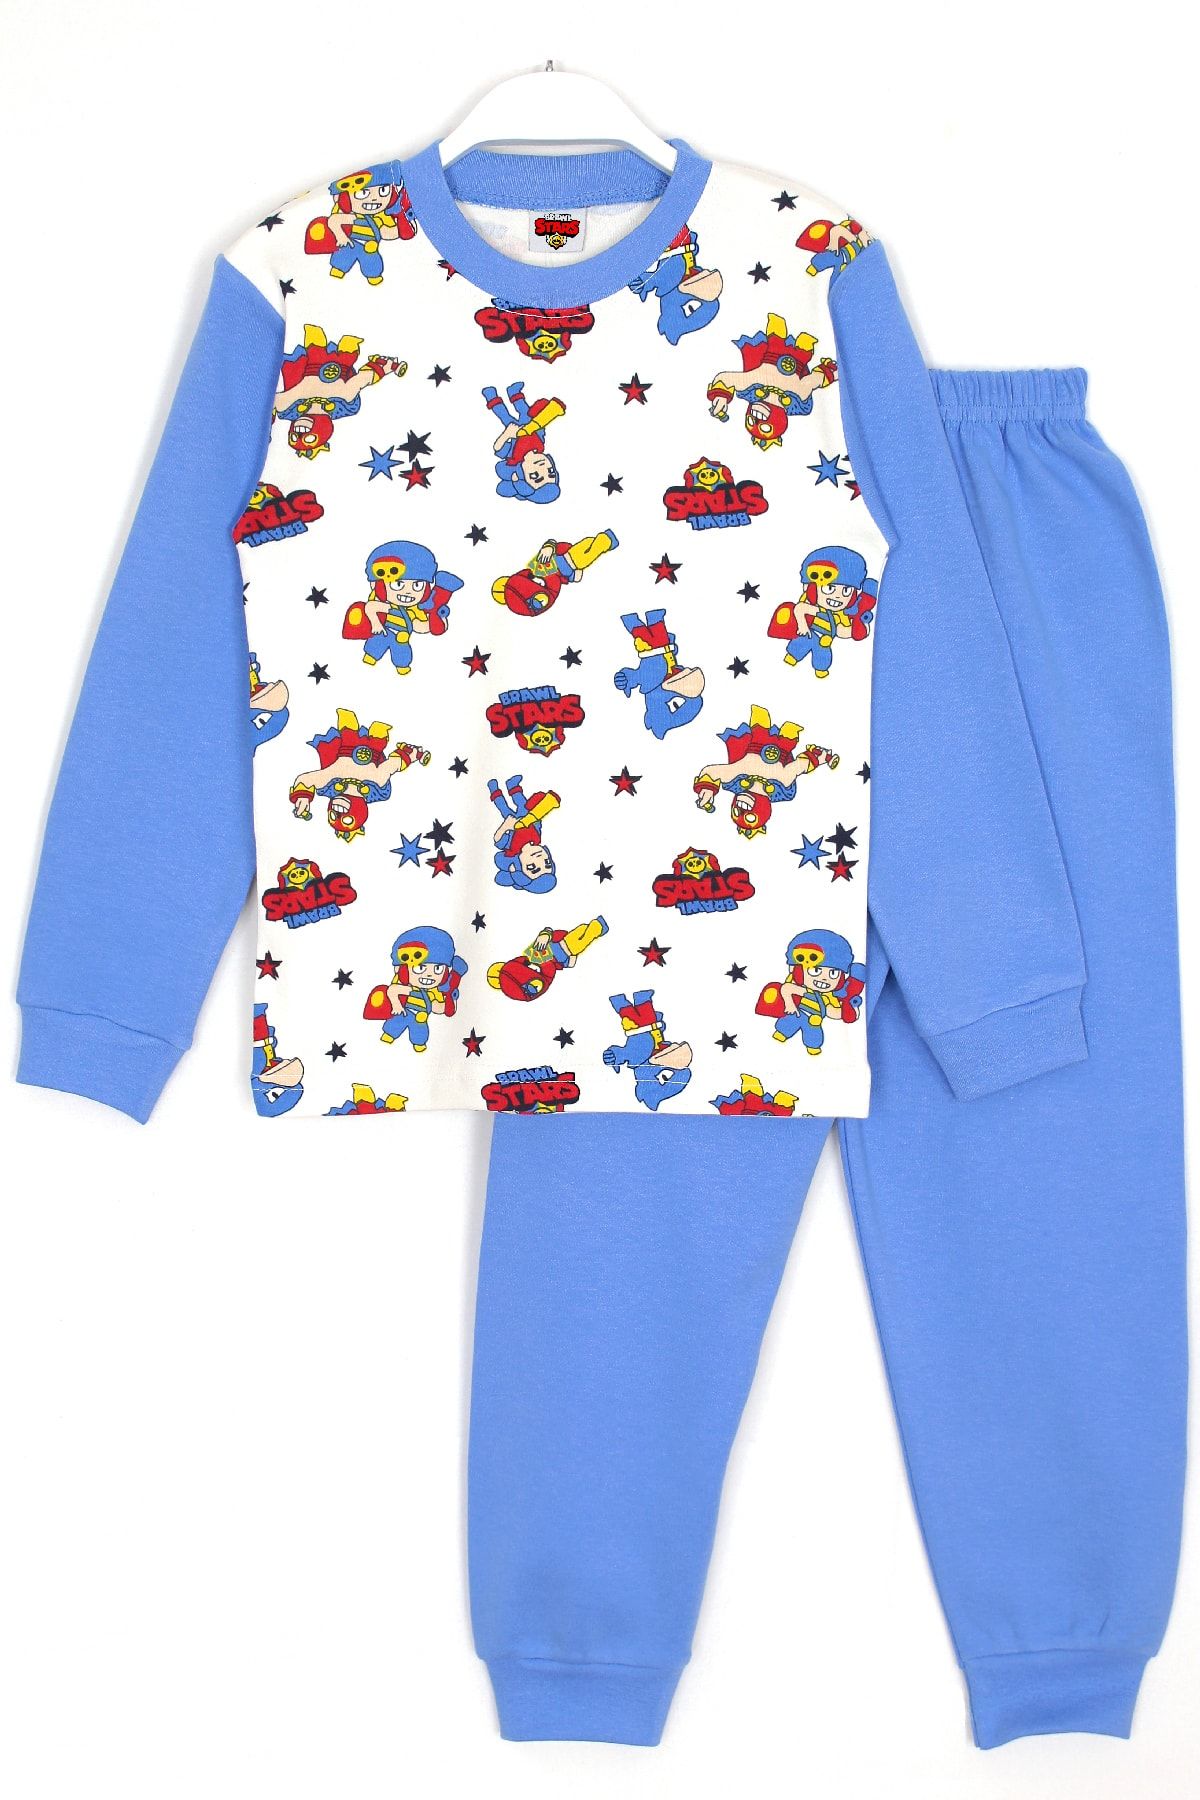 Pijamas de algodón para niños, ropa de descanso, León, Brawl Stars